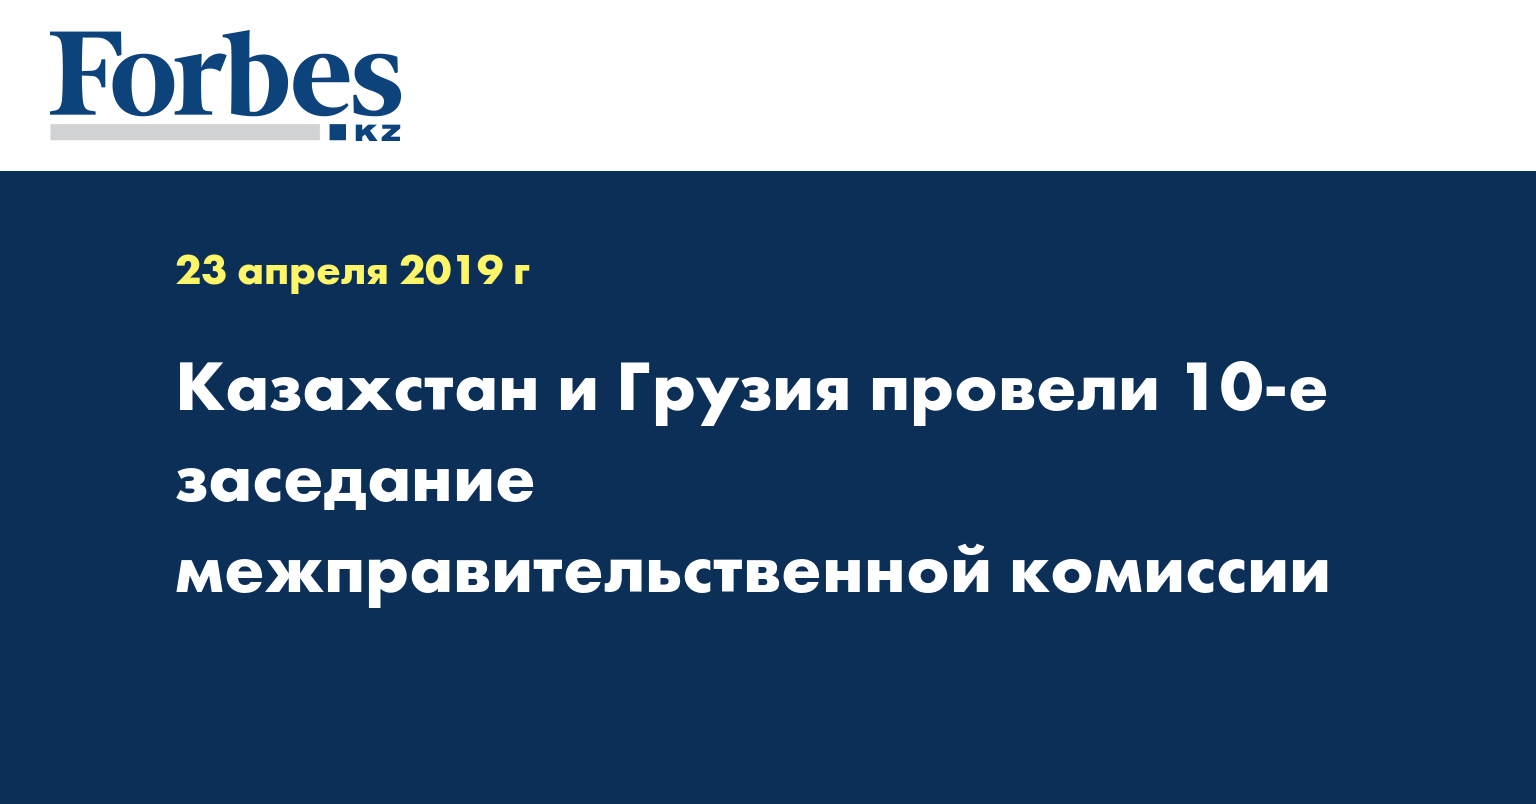 Казахстан и Грузия провели 10-е заседание межправительственной комиссии 